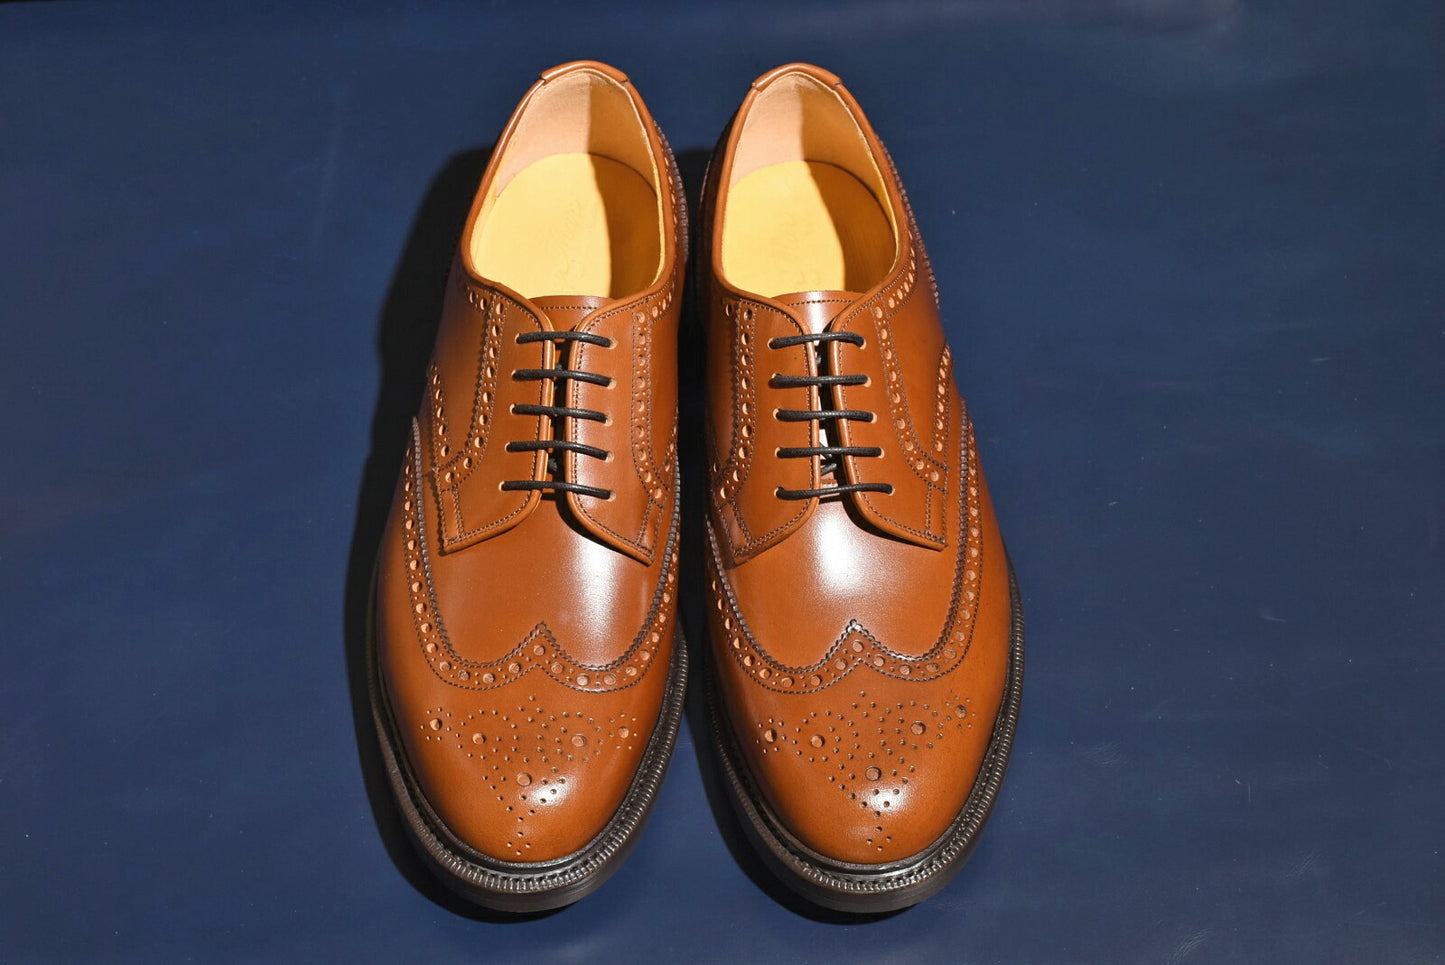 Oliver 3 フルブローグ ブラウン RAYMAR グッドイヤーウェルト ビジネス カジュアル 革靴 24.0cm‾27.0cm レイマー 外羽根 ラバーソール ダブルソール ストームウェルト